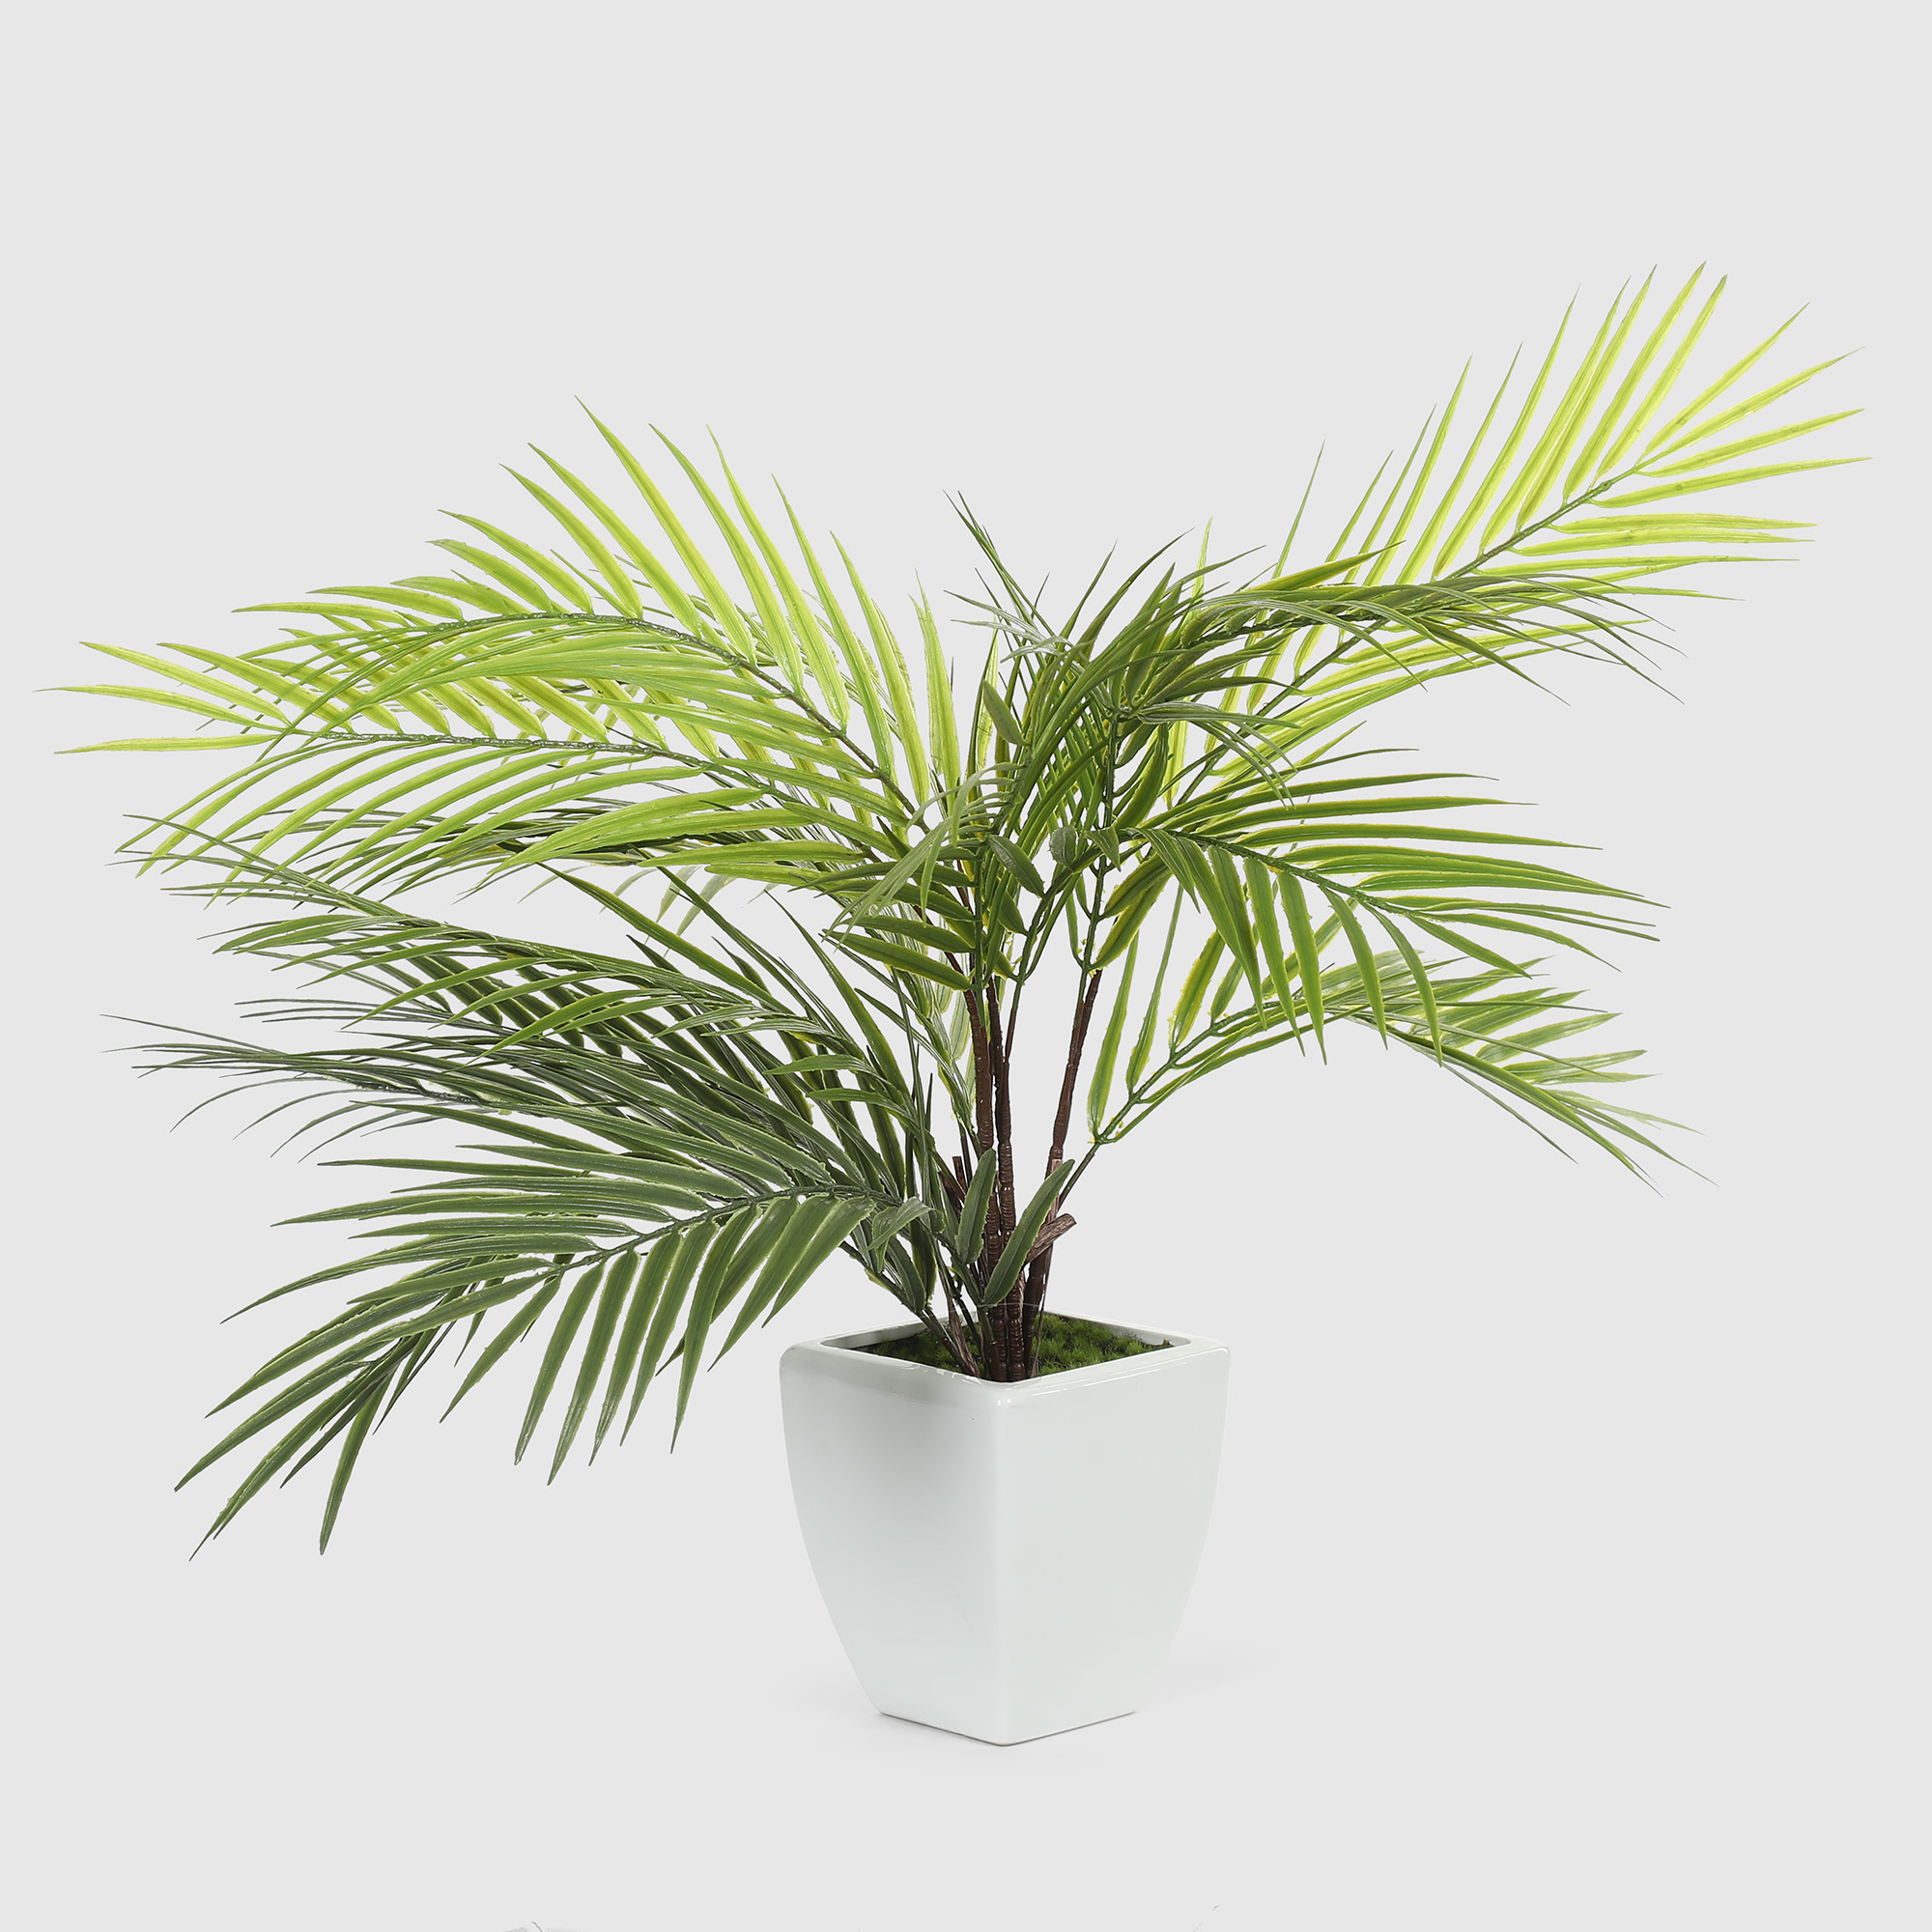 Куст пальмовый в белом кашпо Конэко-О 1013810159 60 см куст фикуса конэко о искусственный зеленый 80 см кашпо 14х18х12 см 3 куста